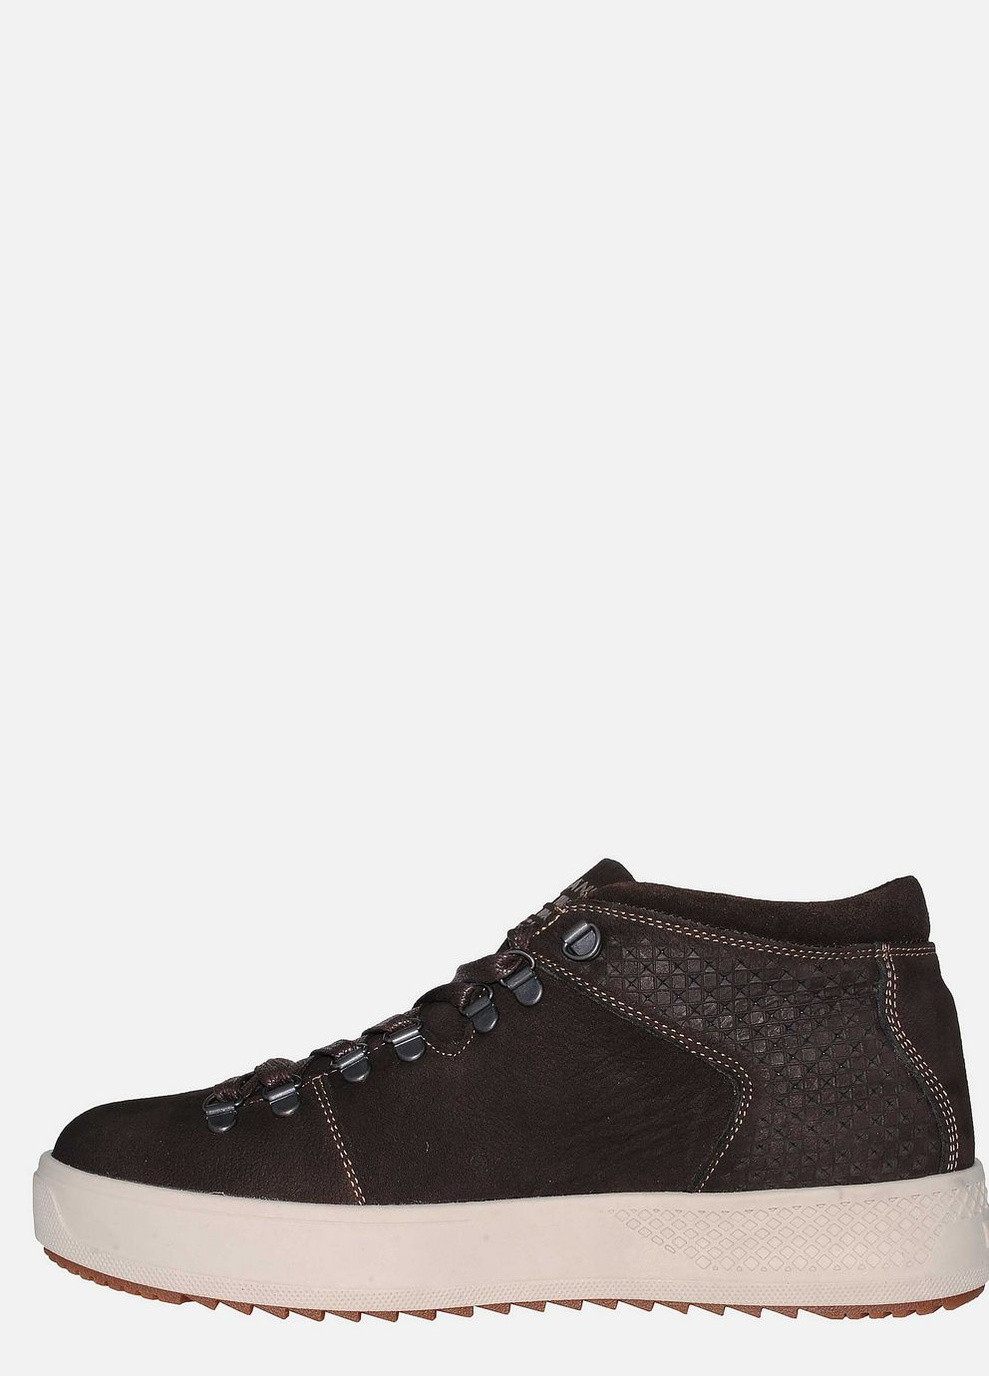 Коричневые зимние ботинки 903кор.н.беж коричневый Fabiani